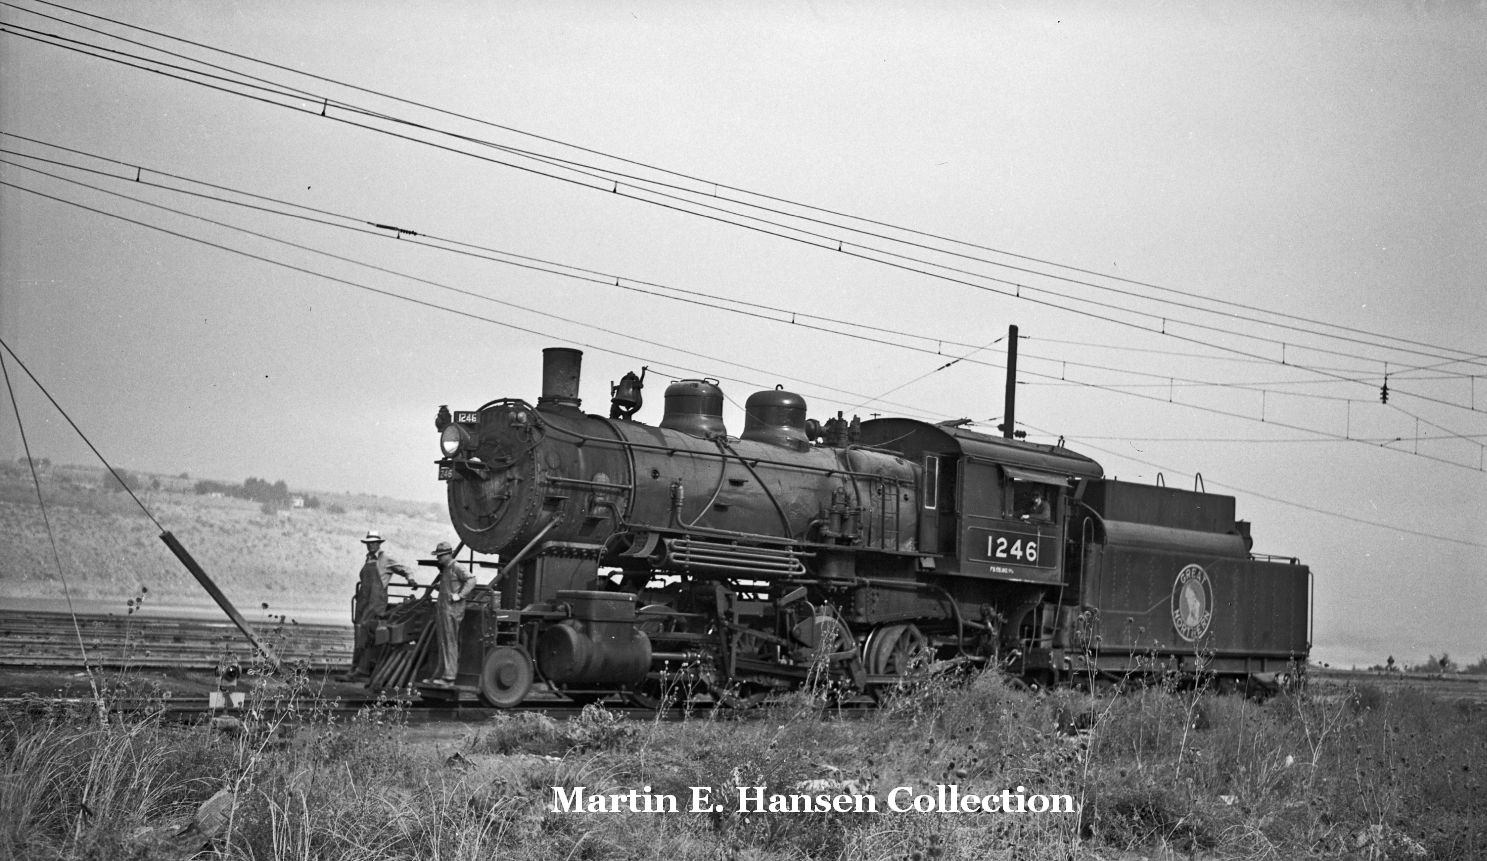 GN 1246 at Wenatchee in 1943